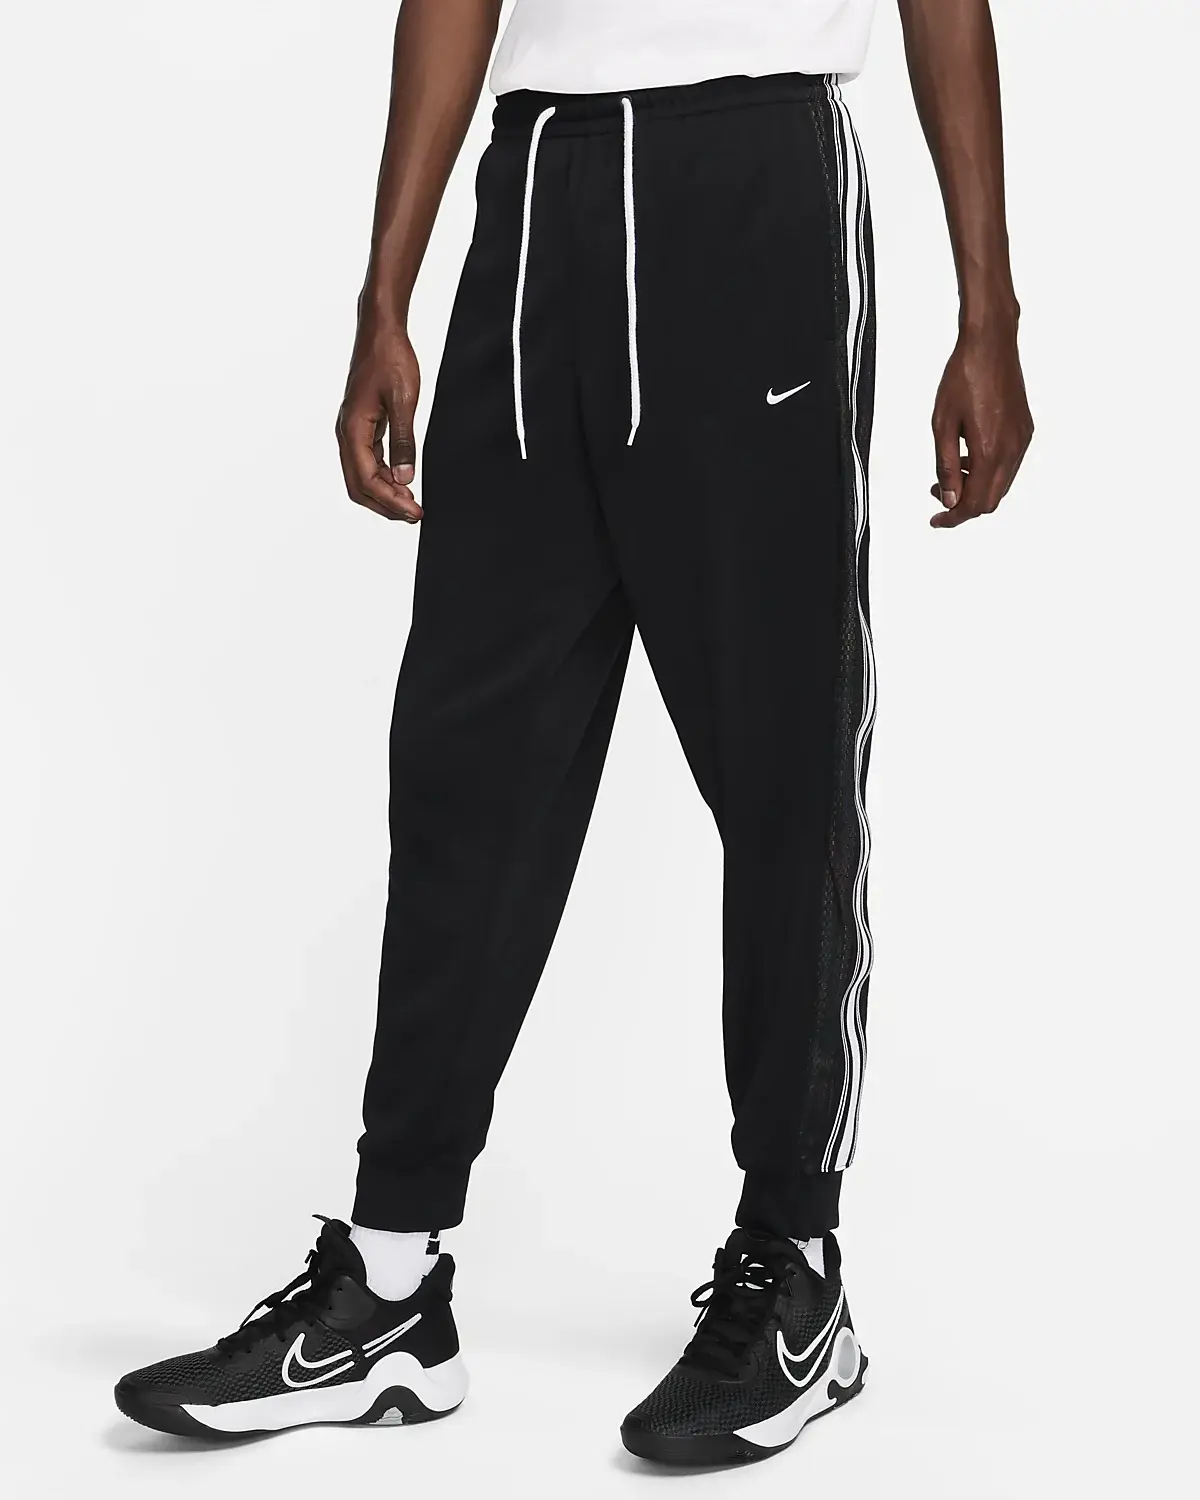 Nike Pants. 1